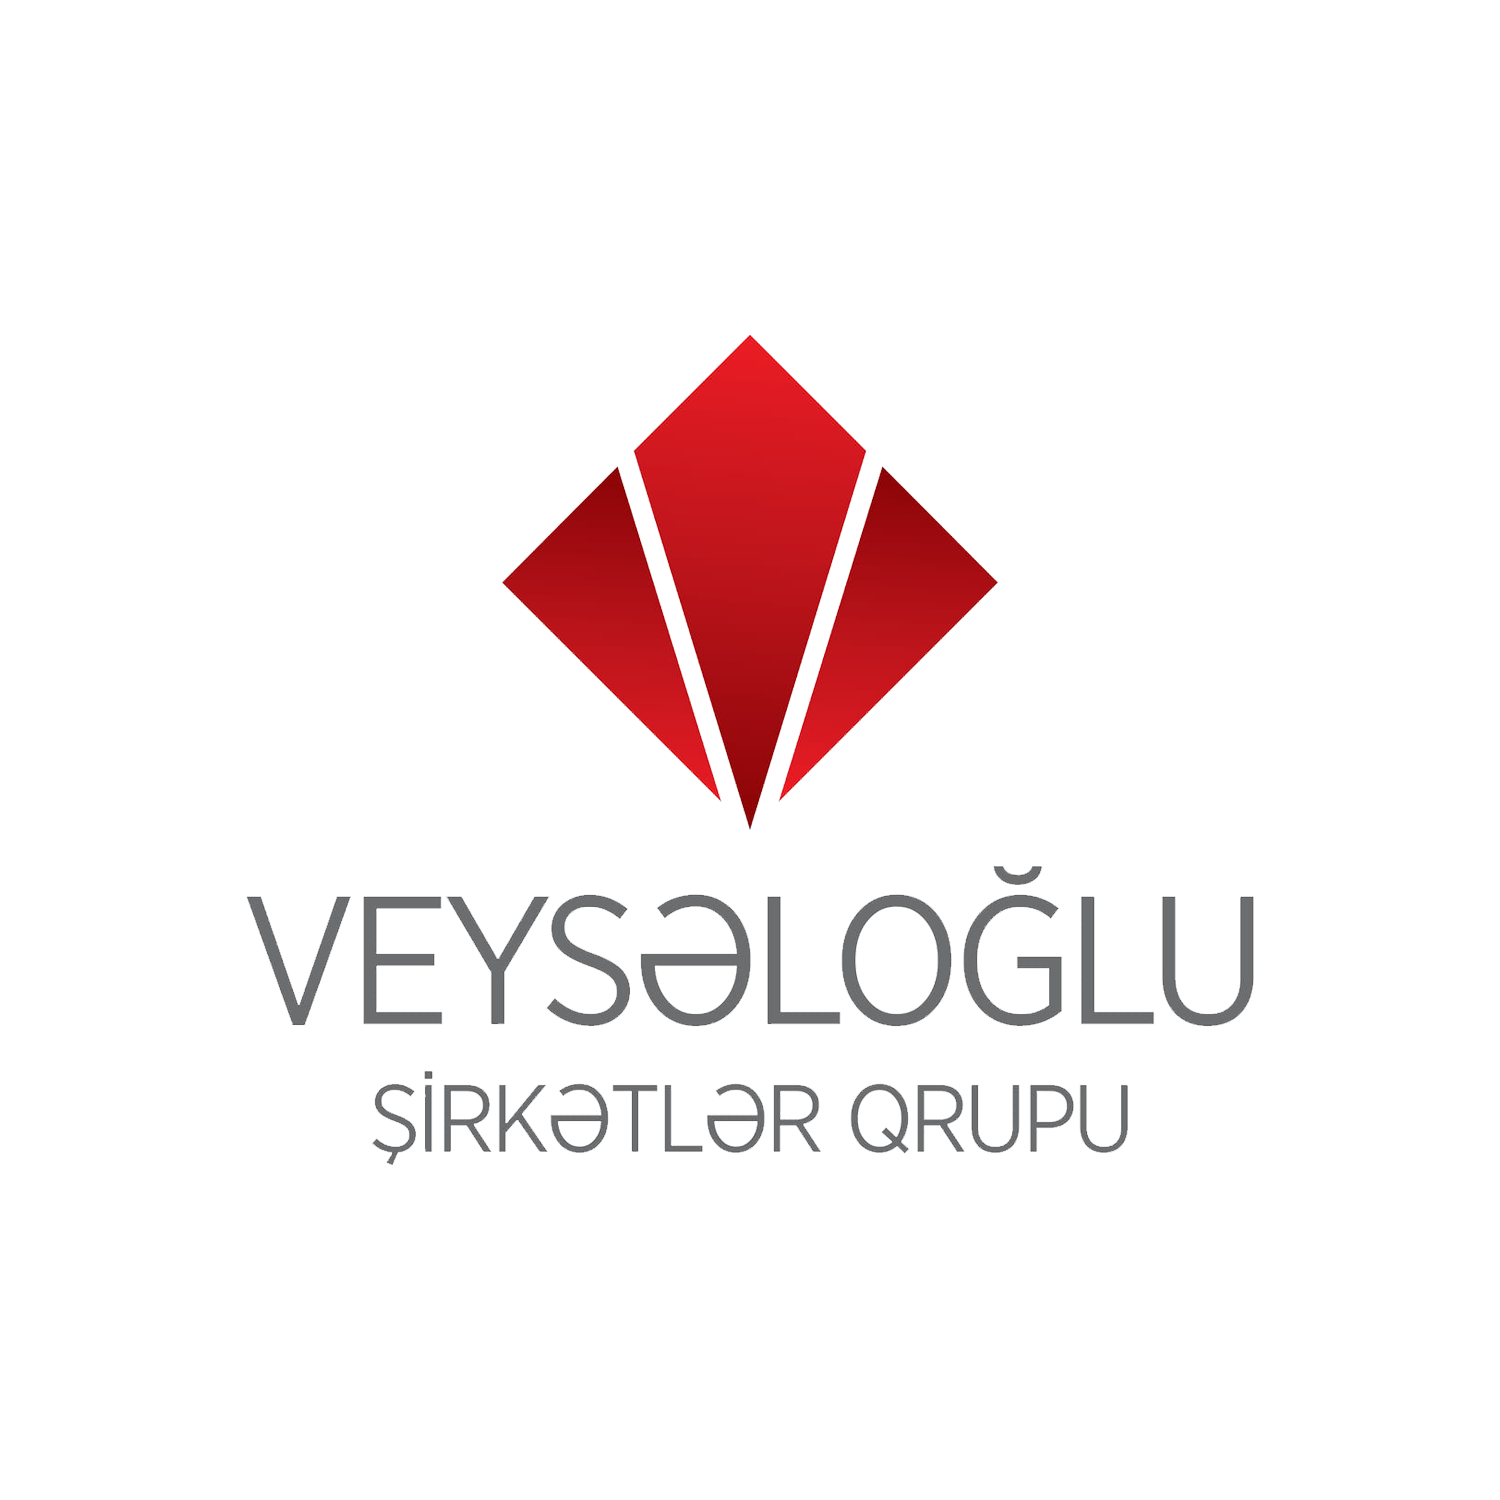 Veysəloğlu Şirkətlər Qrupu